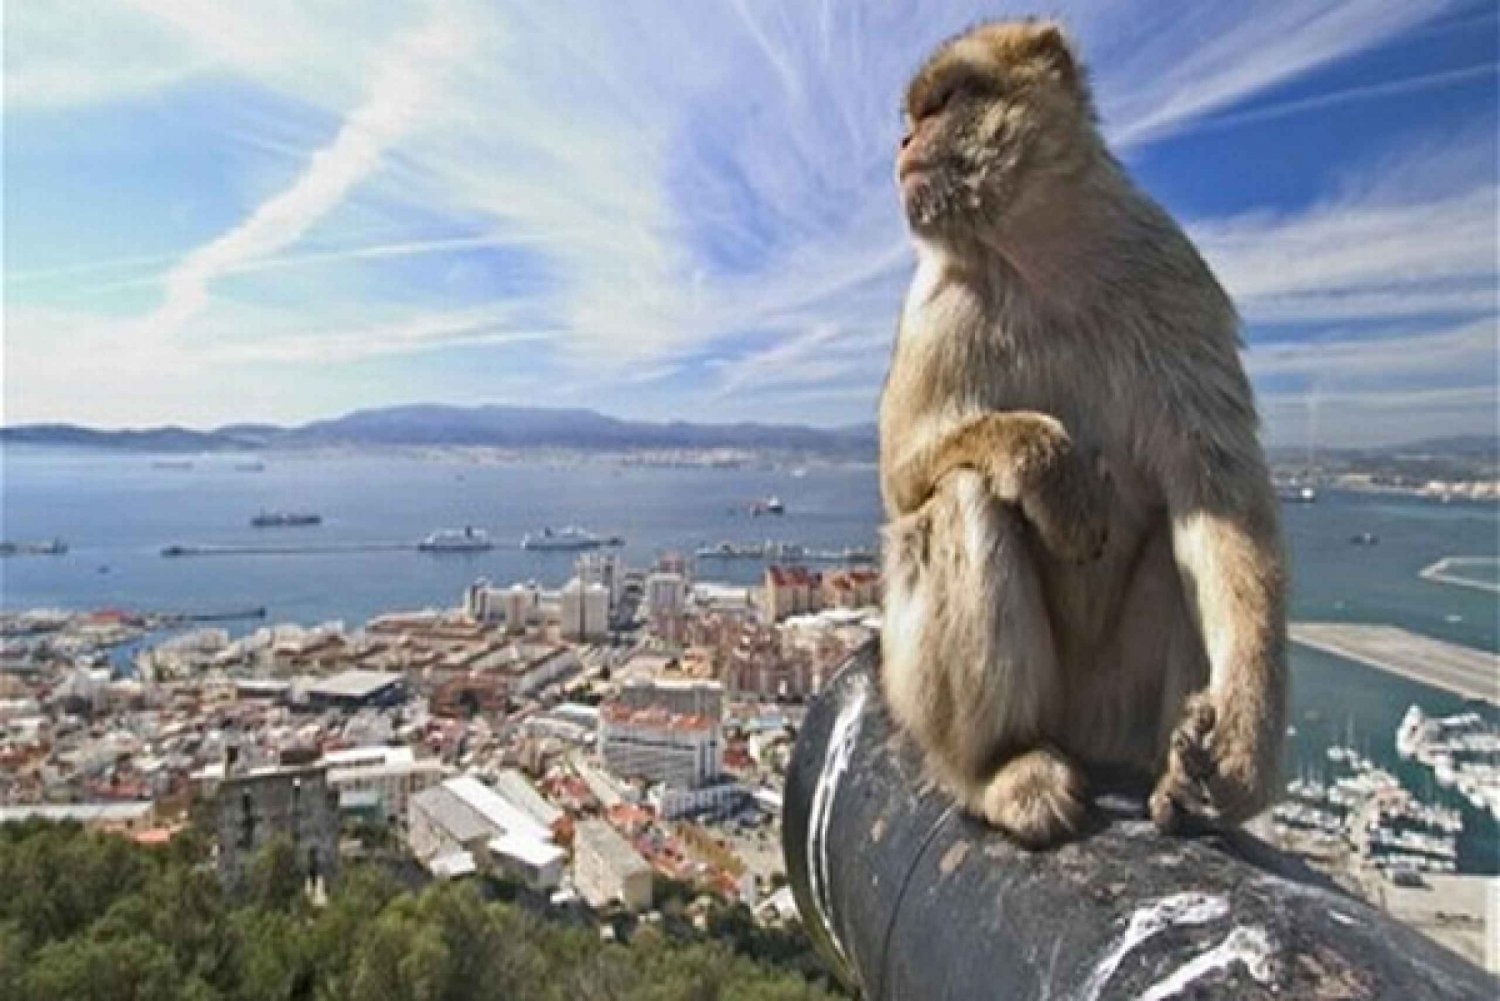 Gibraltar: World War II and Fortress Highlights Tour